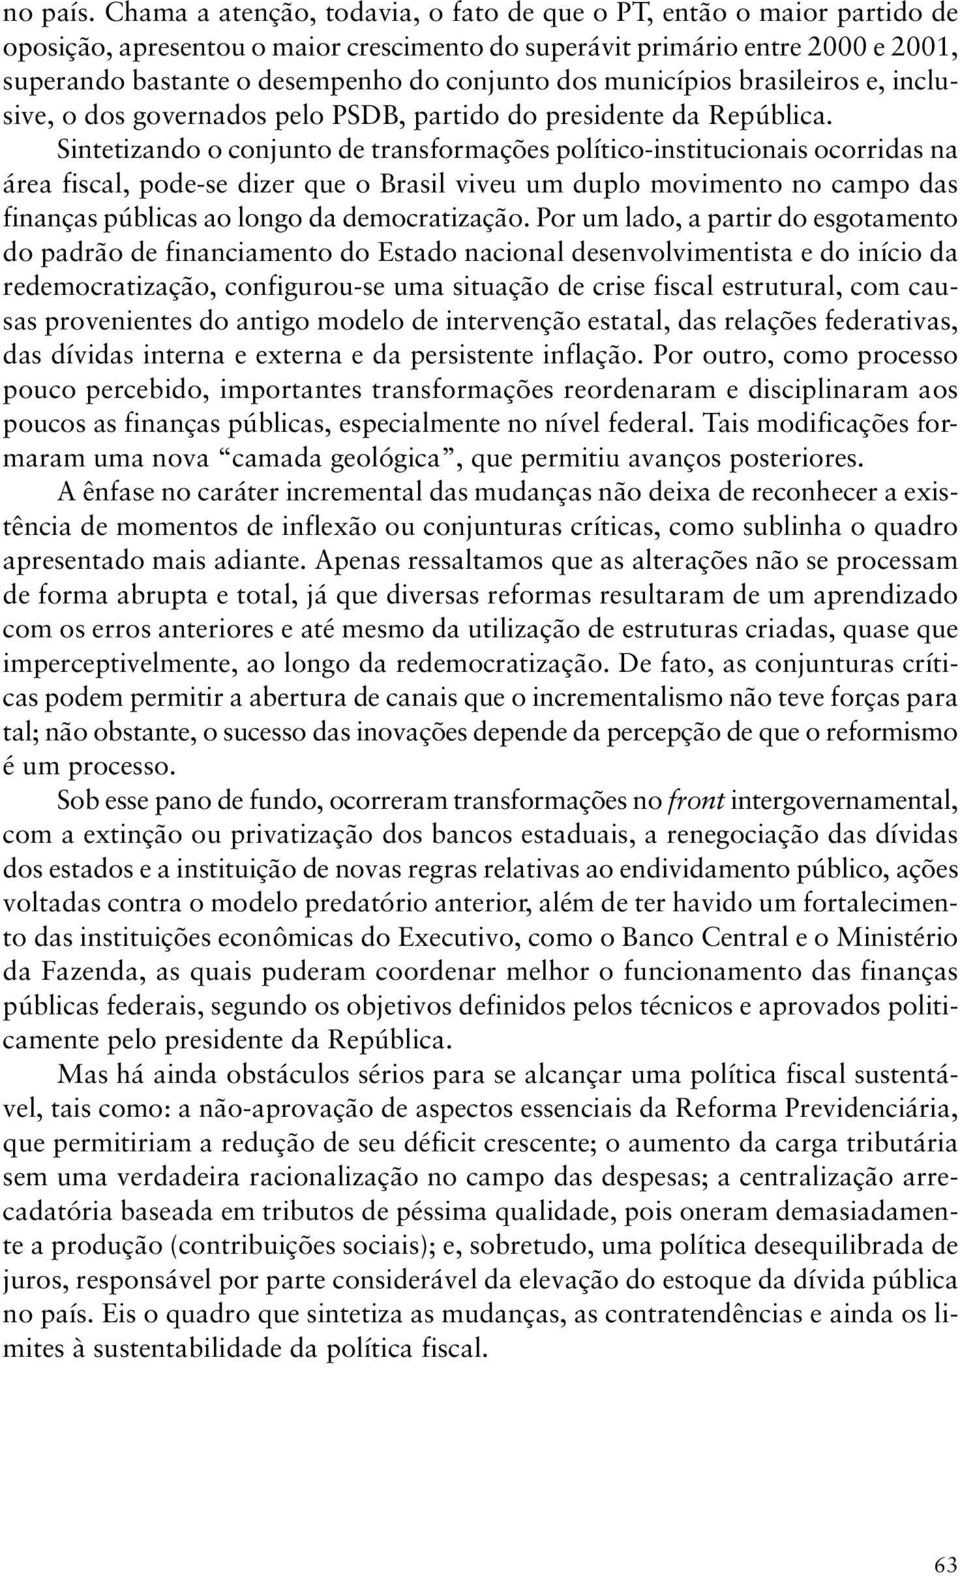 dos municípios brasileiros e, inclusive, o dos governados pelo PSDB, partido do presidente da República.